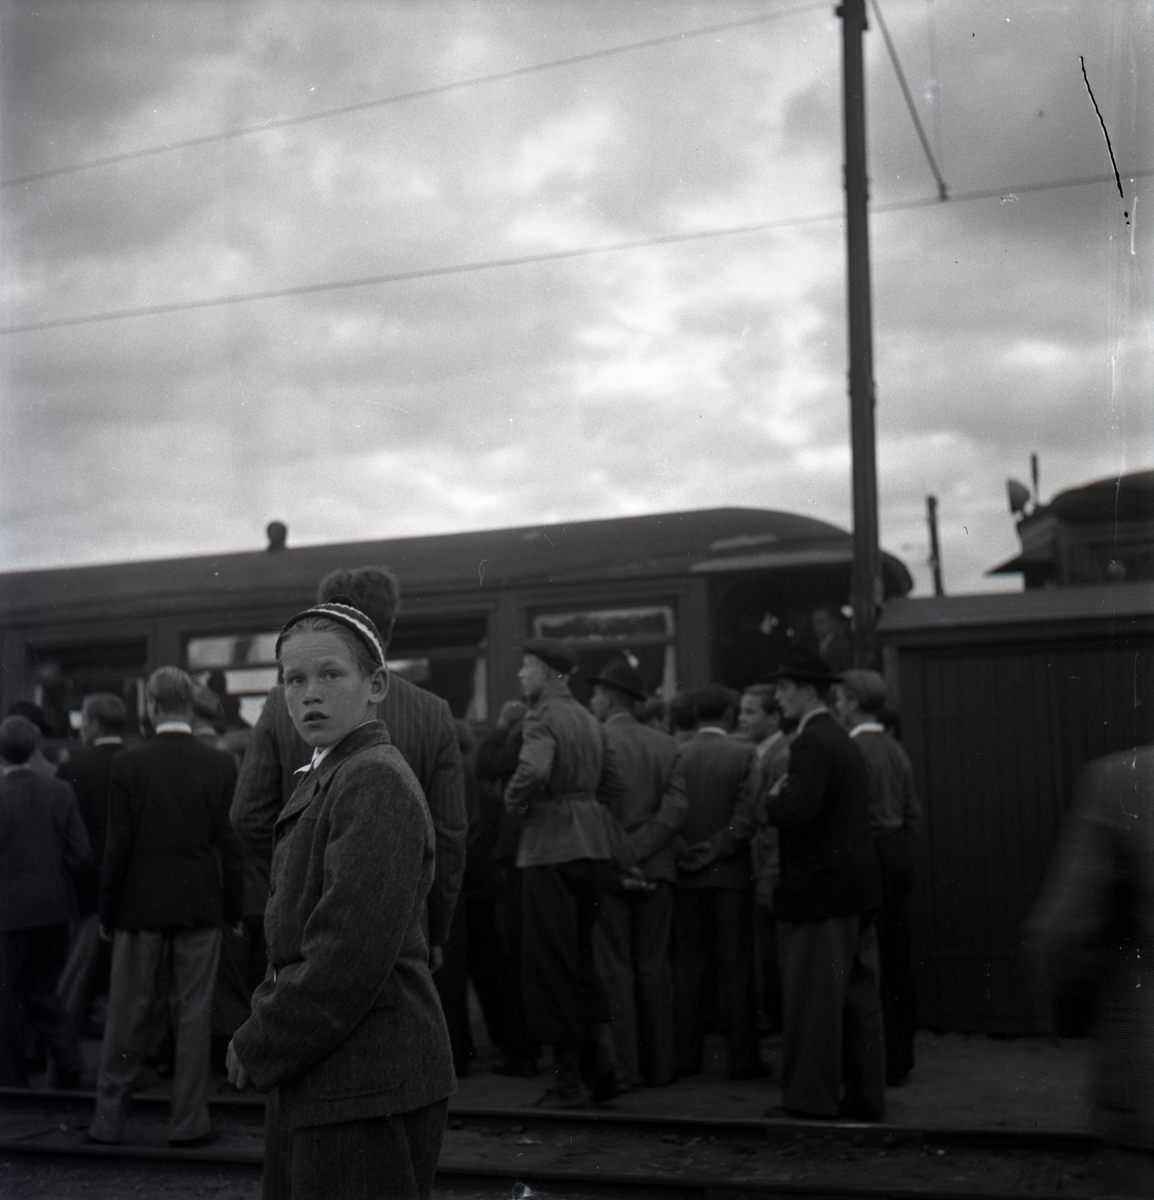 Nazistkravallerna. Folksamling på järnvägsstationen. Nazistmotståndarna samlades vid MÖJ:s smalspåriga järnväg varifrån nazisterna skulle avresa mot Klockrike. Den 4-5 september 1943.